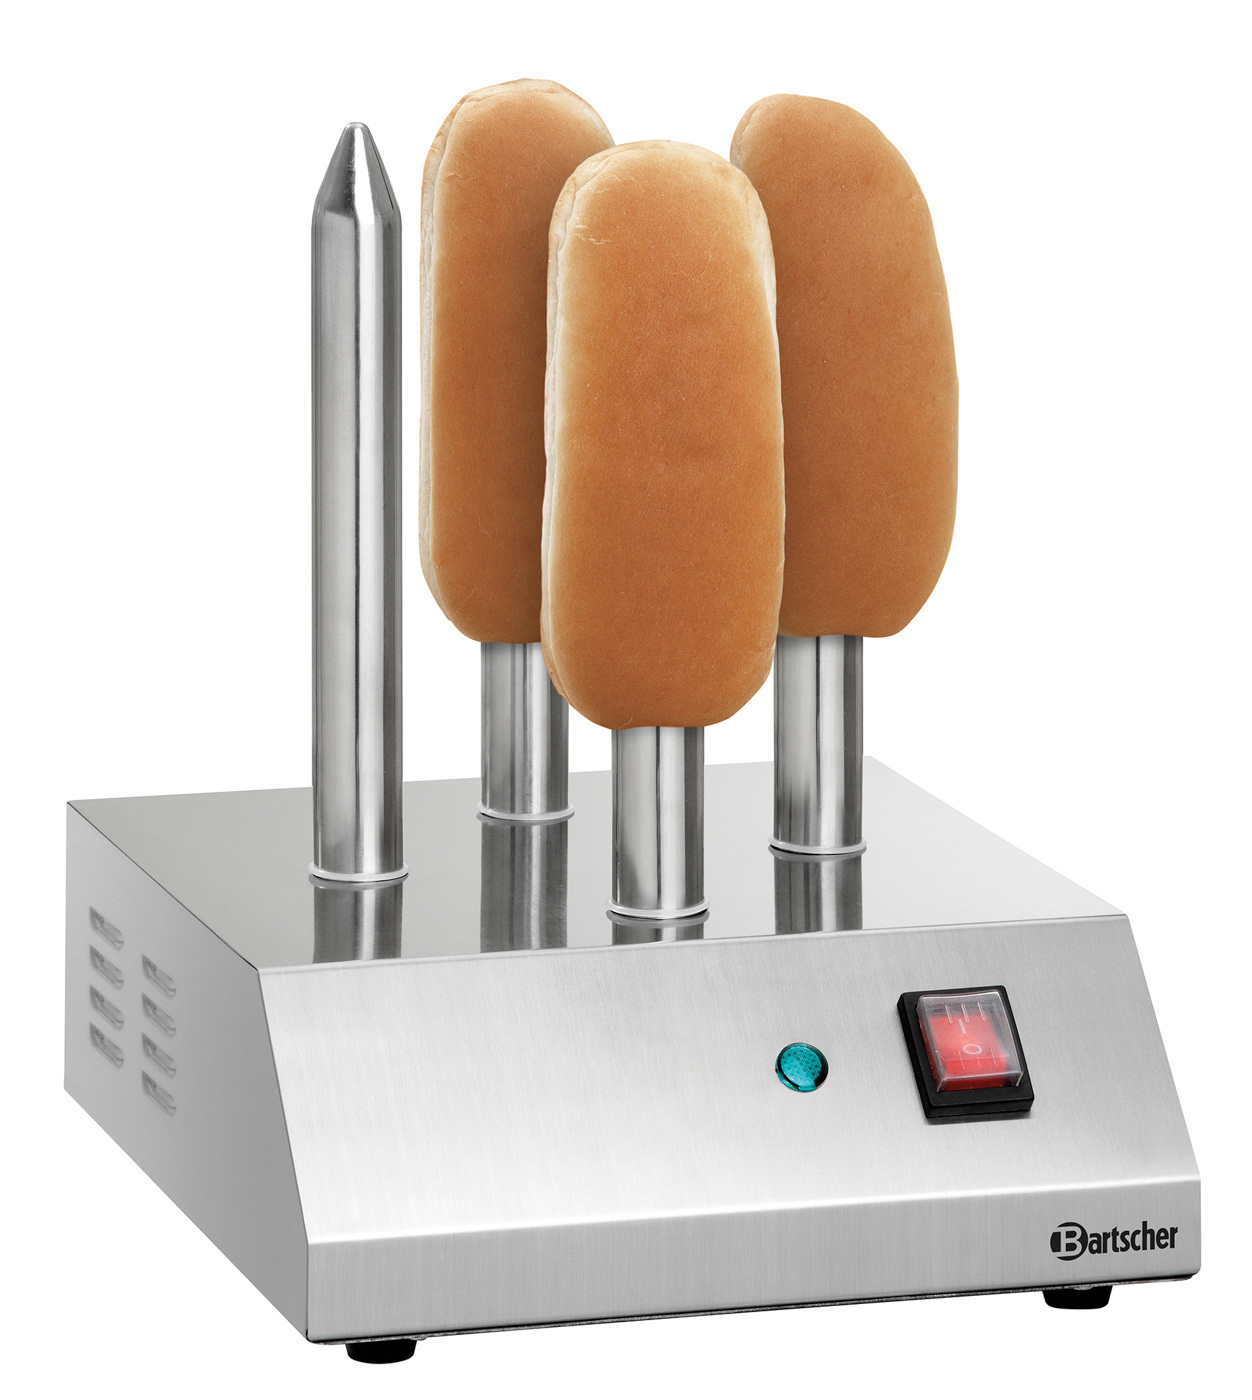 Bartscher Hot-Dog-Spießtoaster T4 | Anzahl Toaststangen: 4 | Maße: 24 x 28 x 310 cm. Gewicht: 2,8 kg